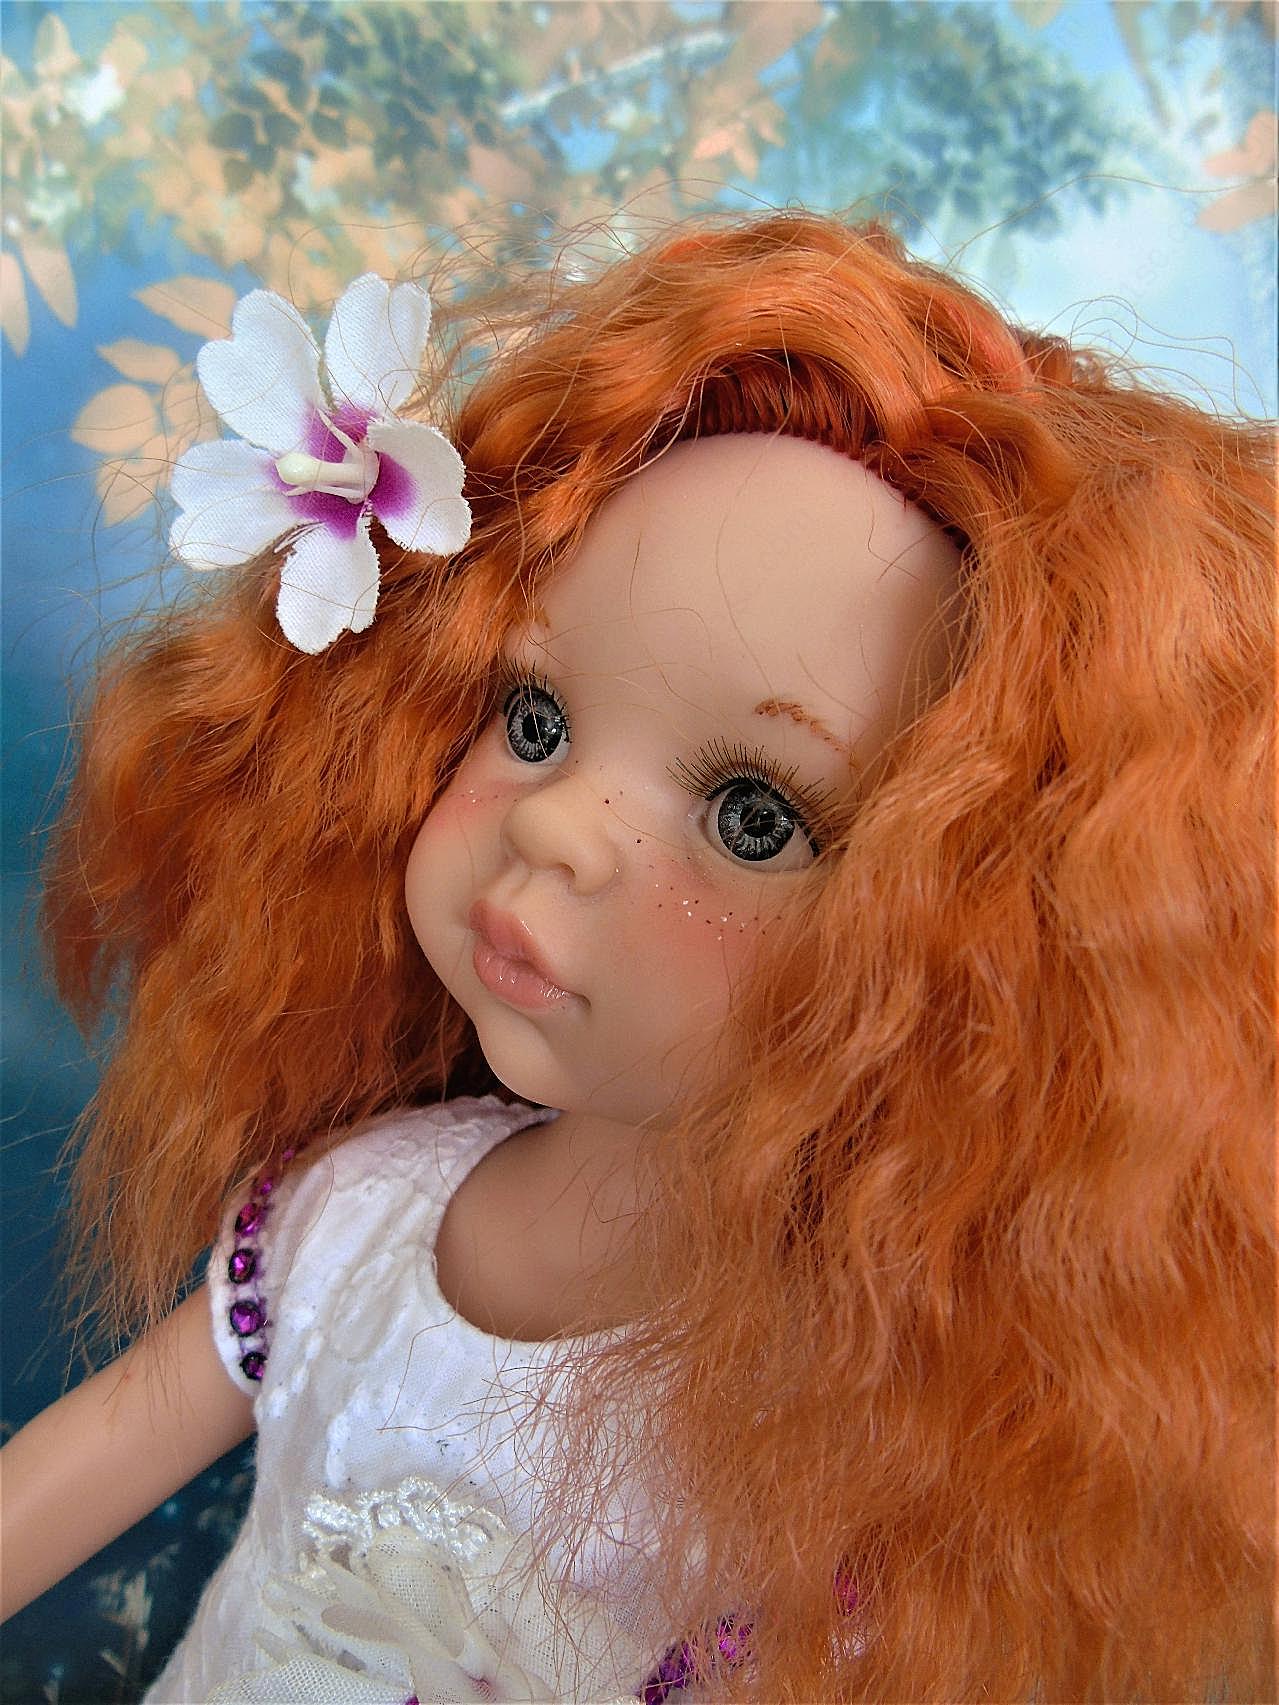 红发娃娃玩具图片百科生活用品